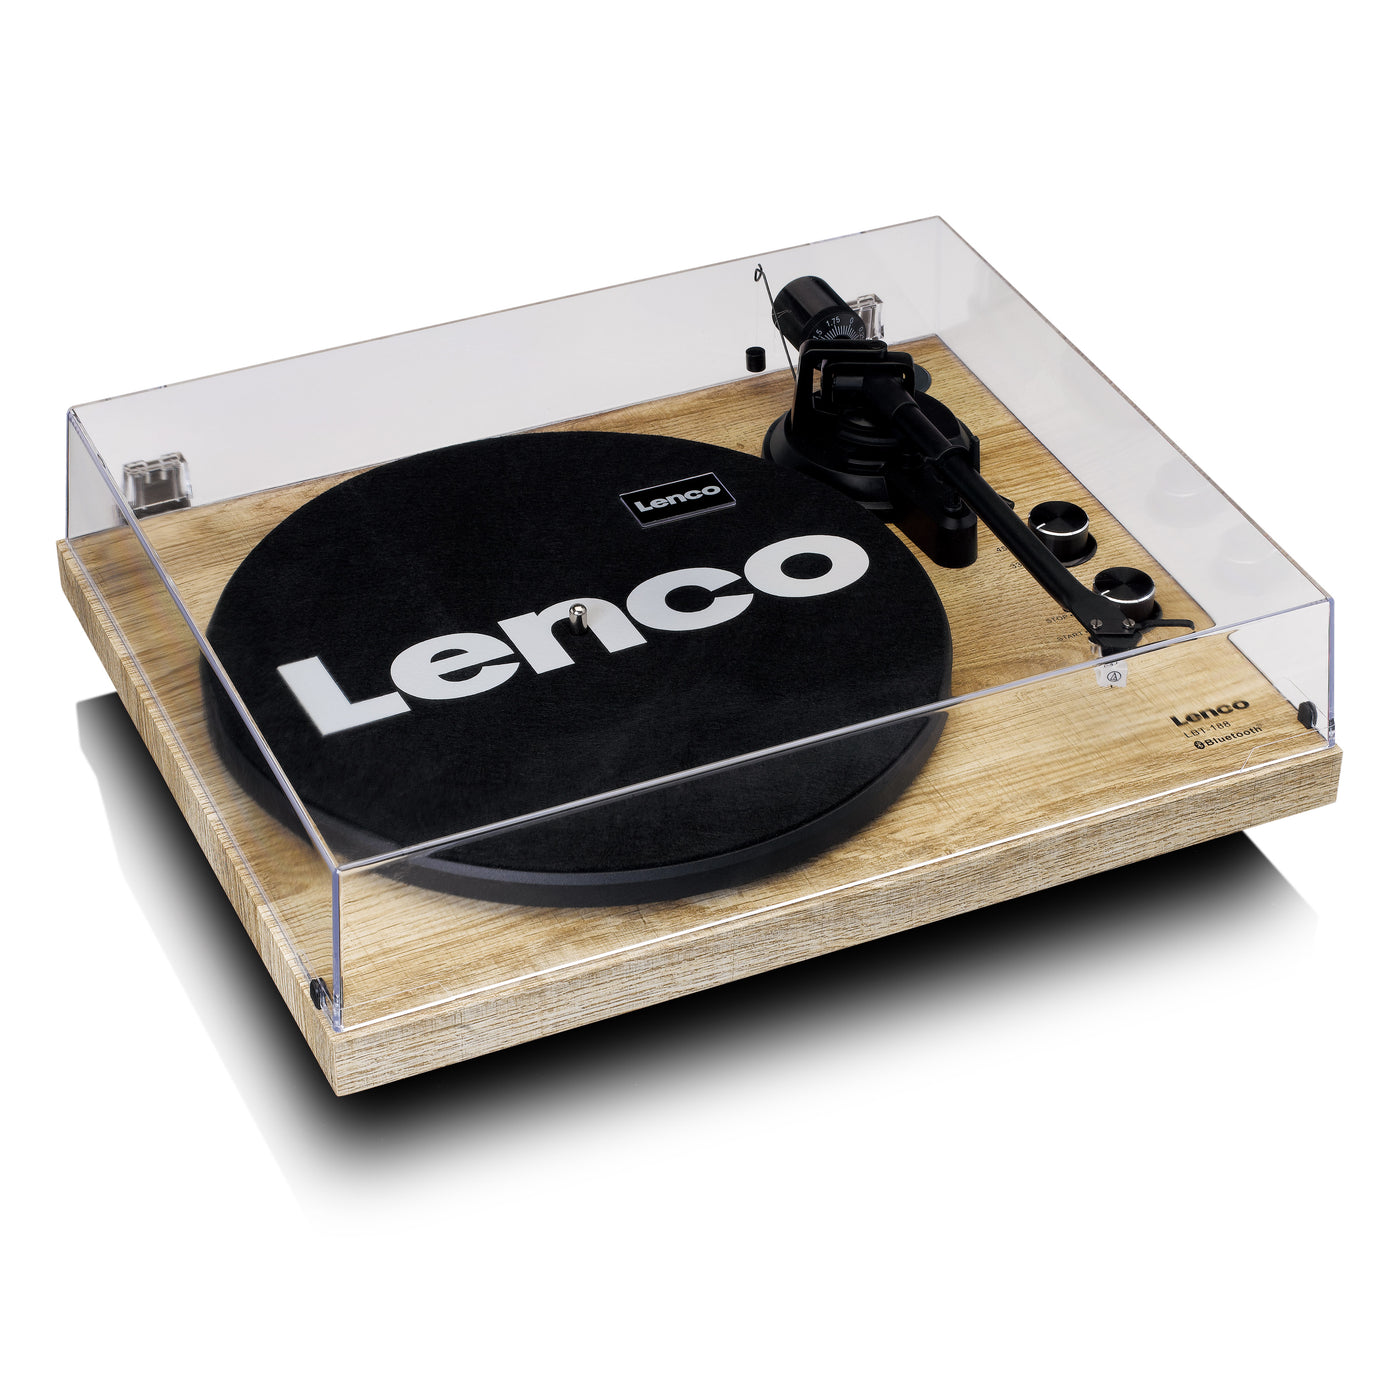 LENCO LBT-188PI - Gramofon z transmisją Bluetooth®, drewno